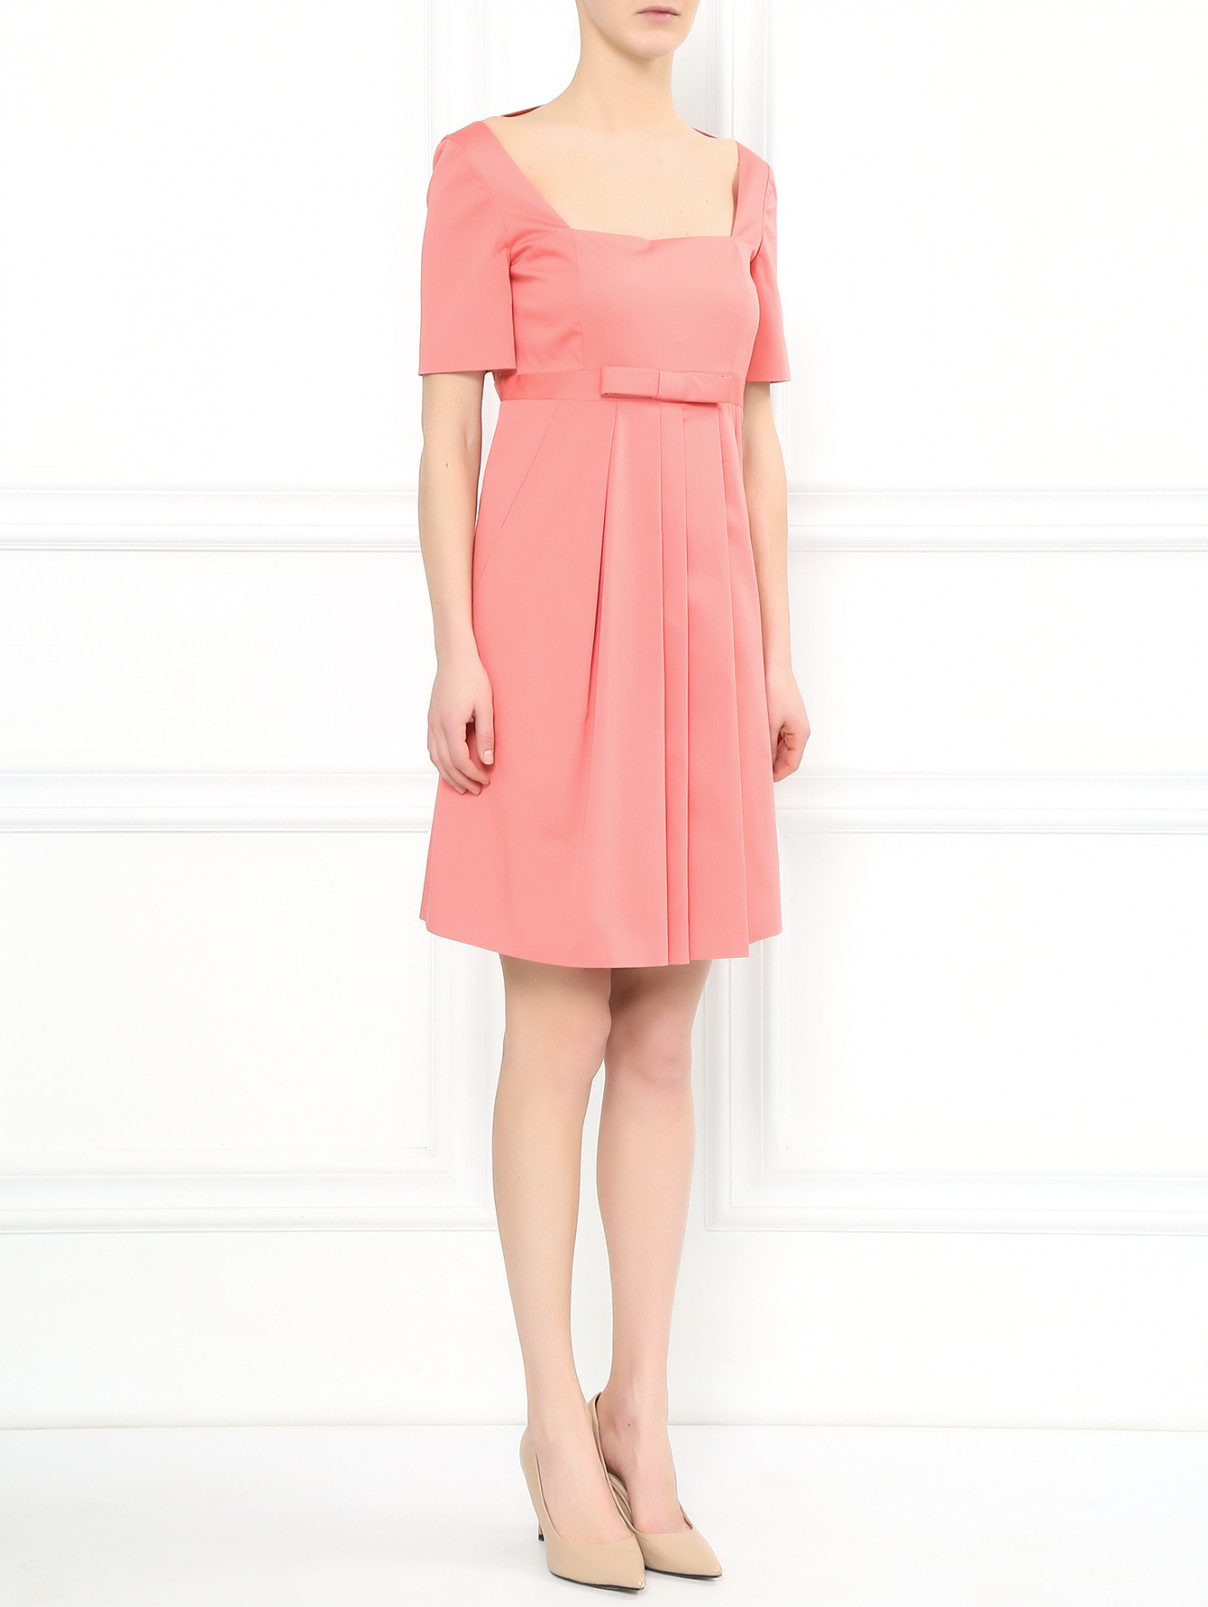 Платье из хлопка с декоративным бантом Moschino Cheap&Chic  –  Модель Общий вид  – Цвет:  Розовый